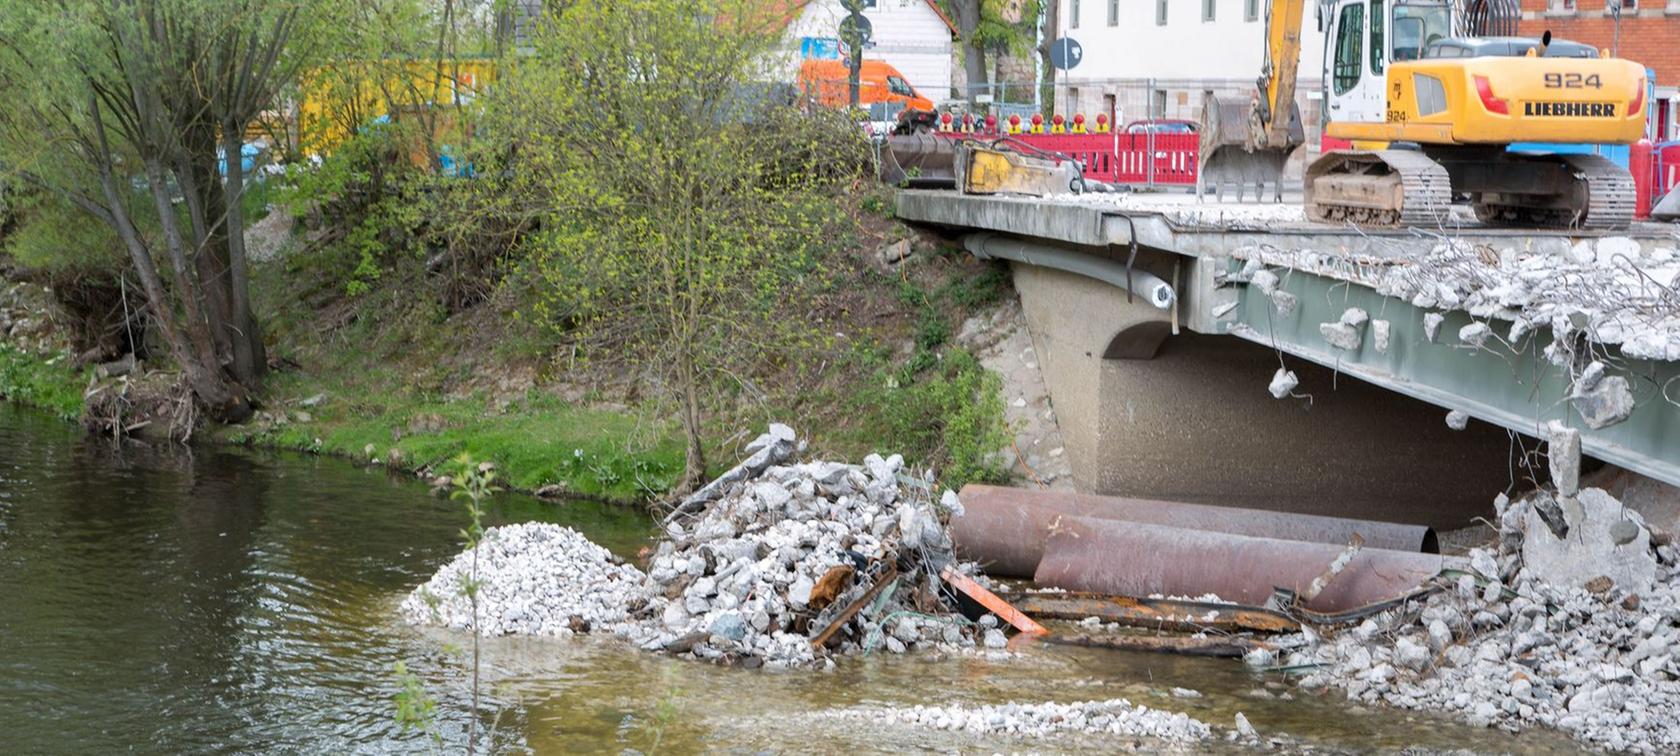 Abbrucharbeiten der alten Regnitzbrücke in Fürth starten